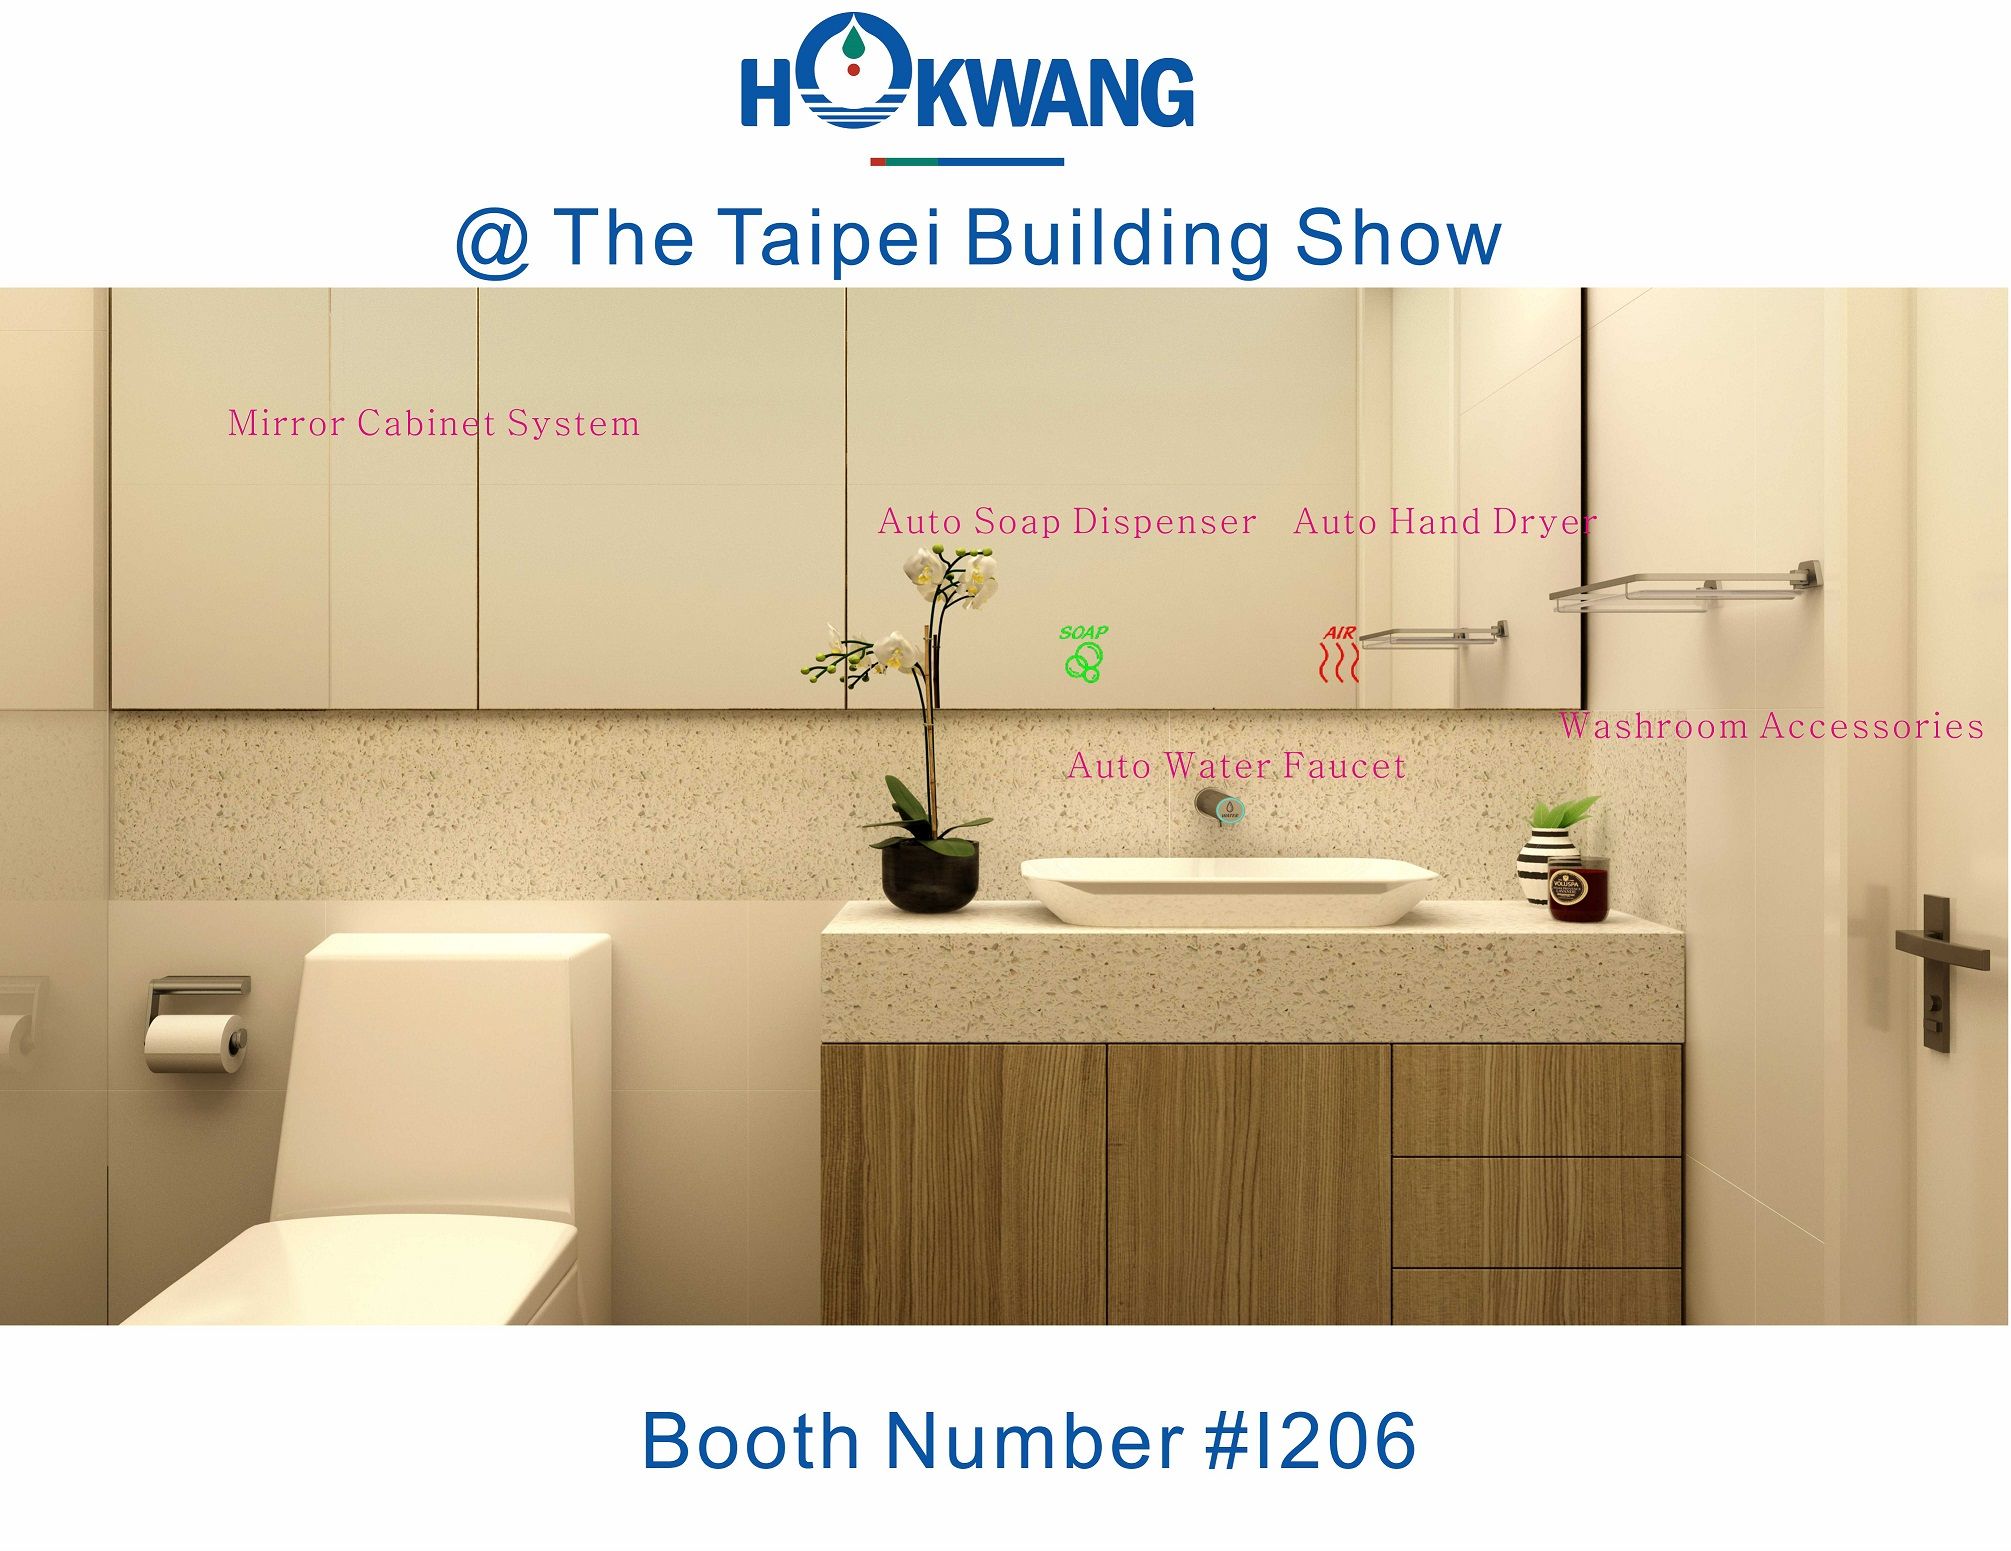 Hokwang participará da Taipei Building Show 2018